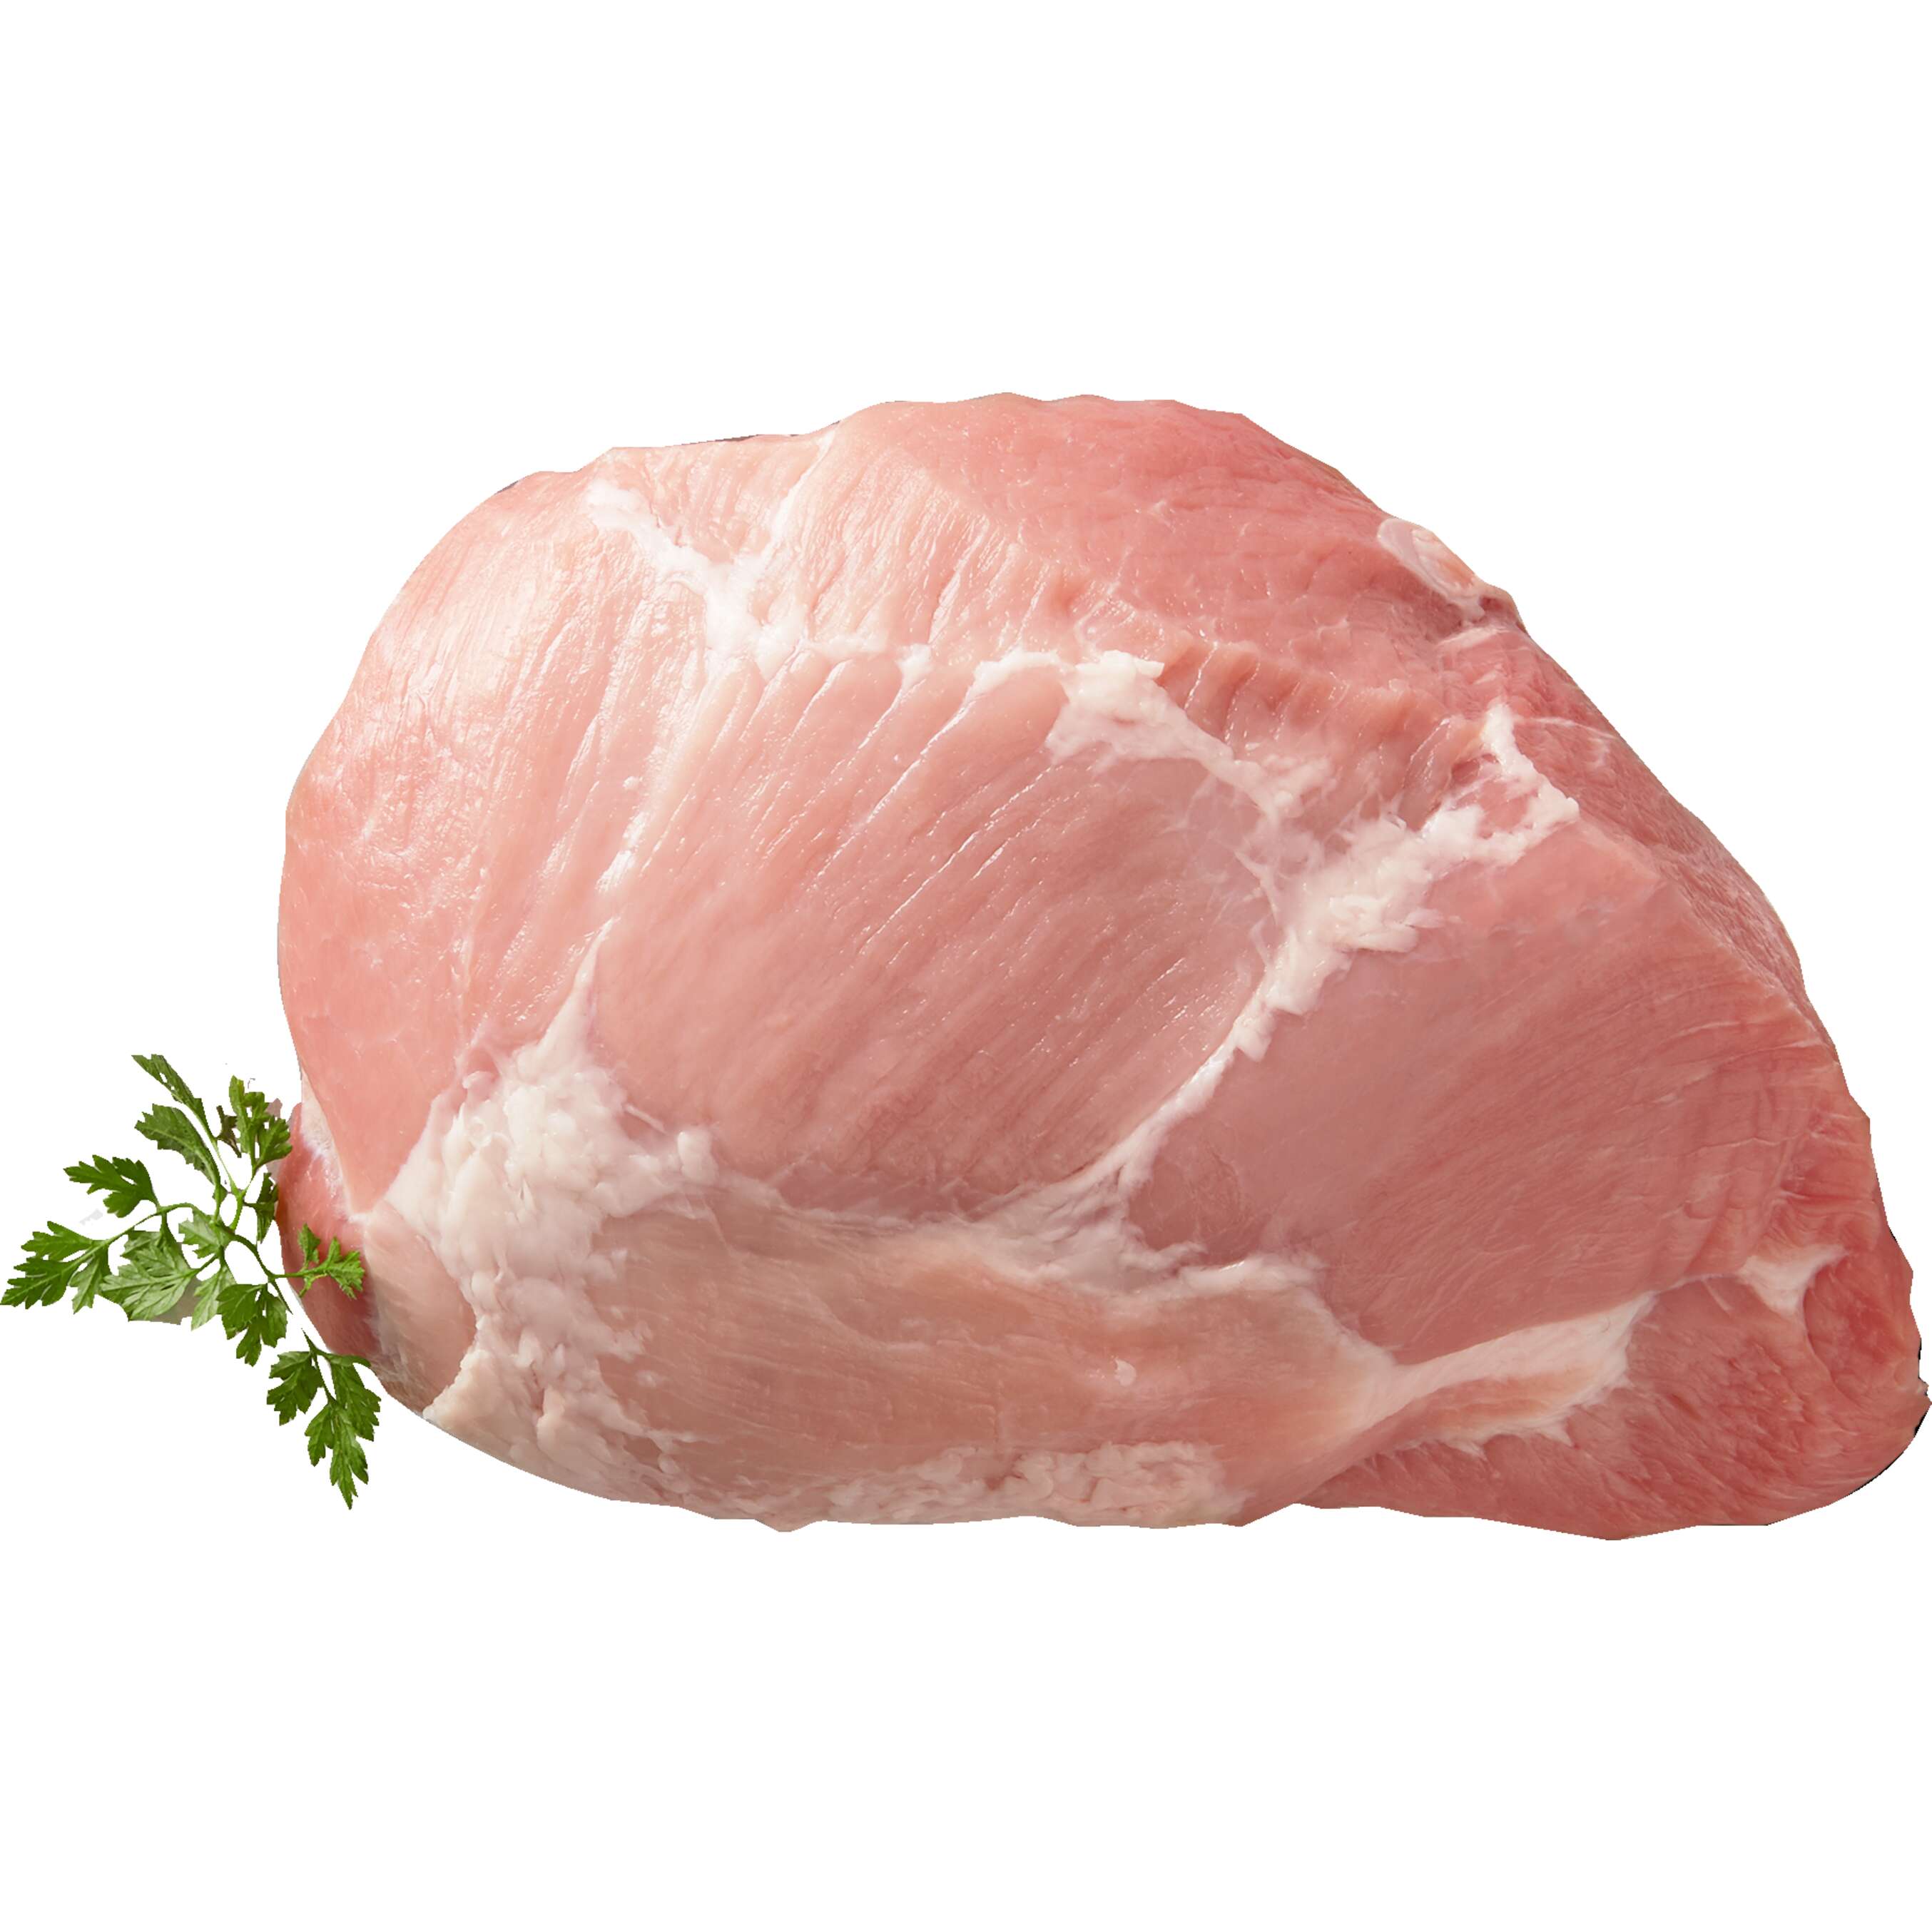 Изображение за продукта Свинска плешка без кост от нашата витрина